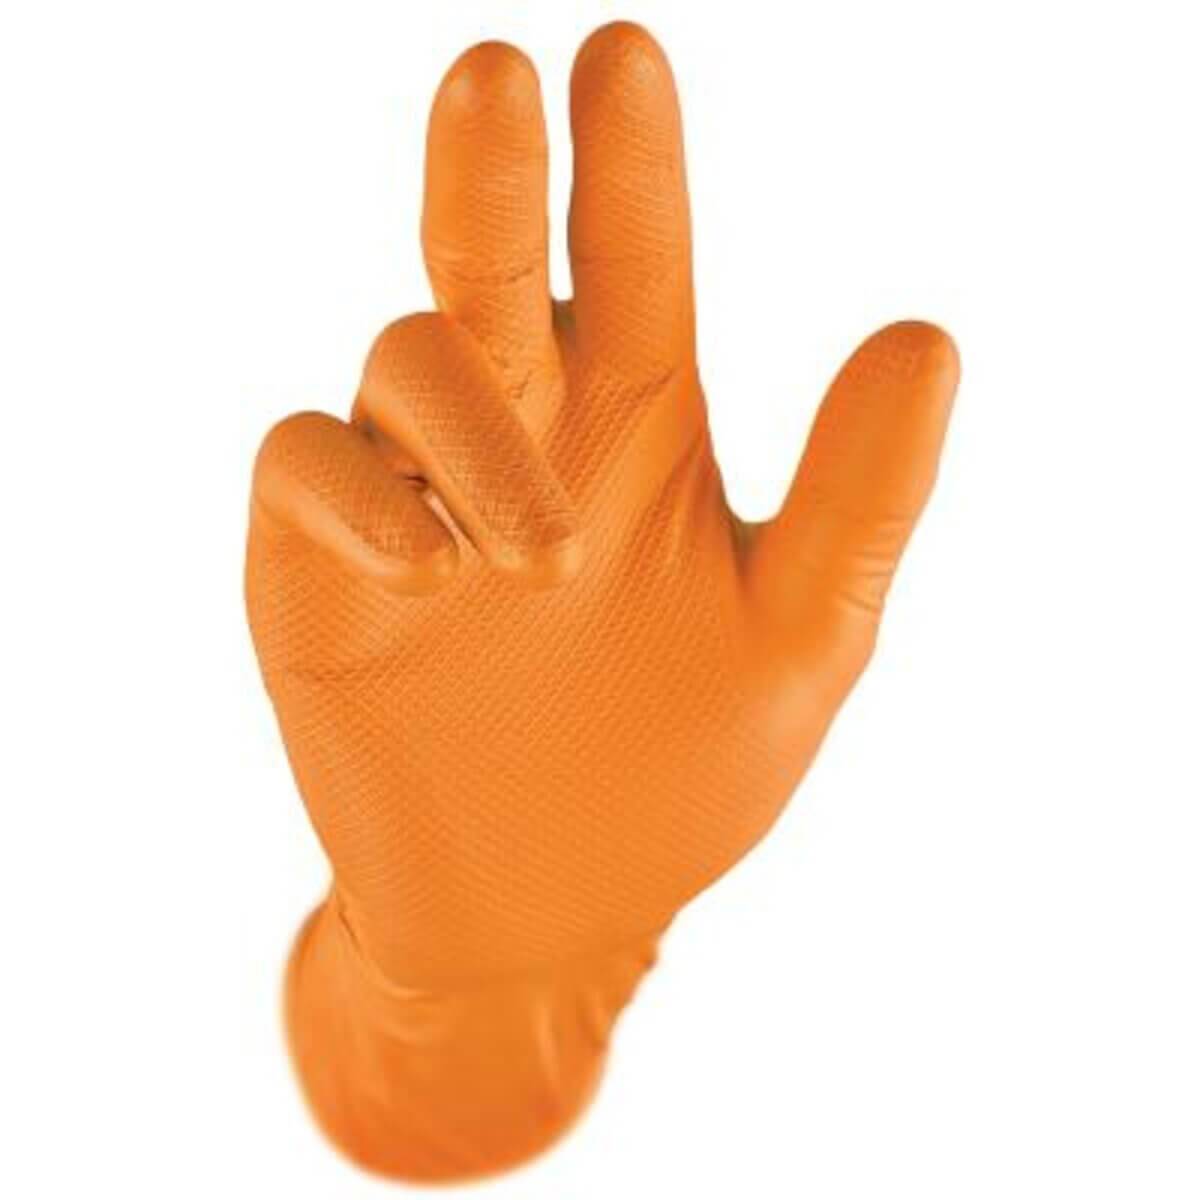 Grippaz Gloves Orange